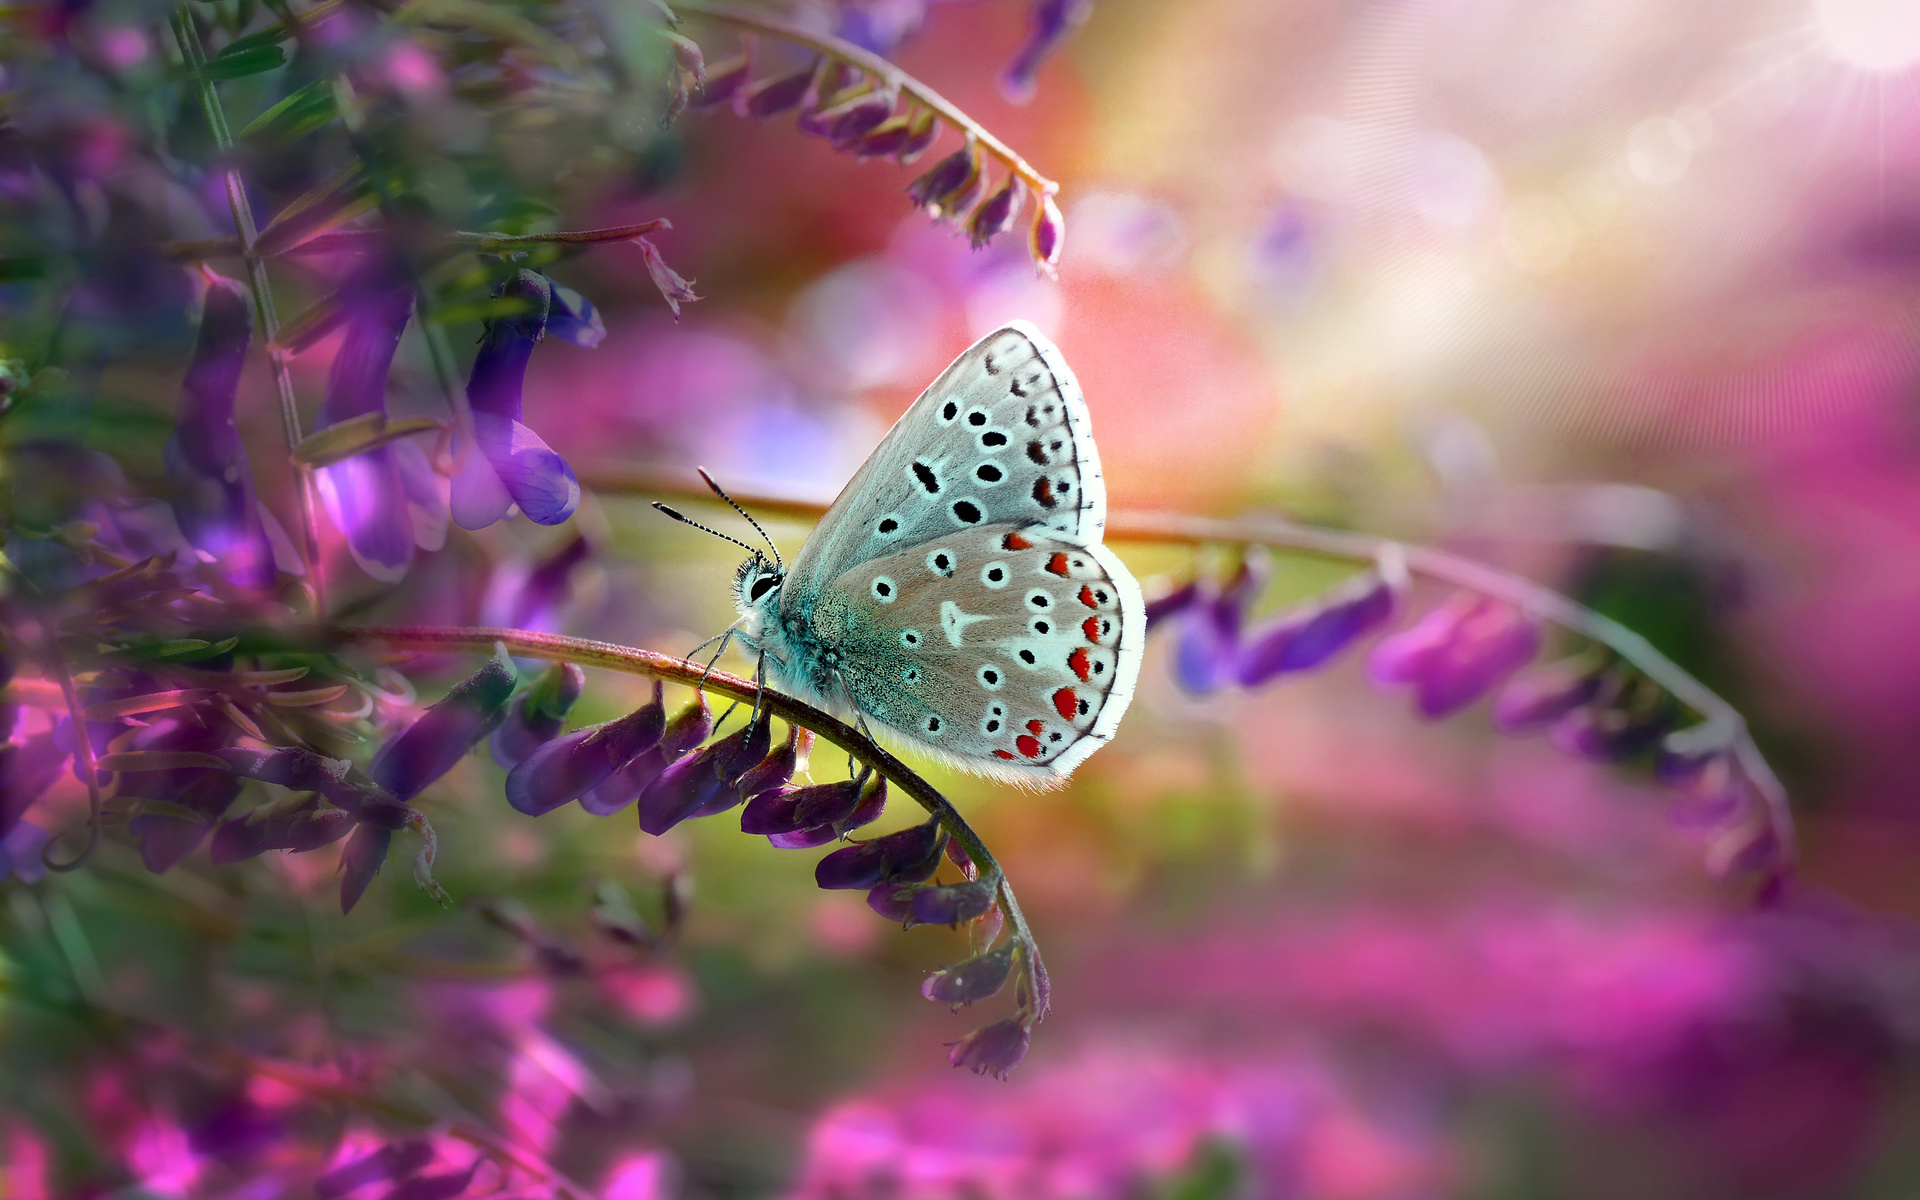 Descarga gratuita de fondo de pantalla para móvil de Animales, Insecto, Mariposa, Flor Purpura, Macrofotografía.